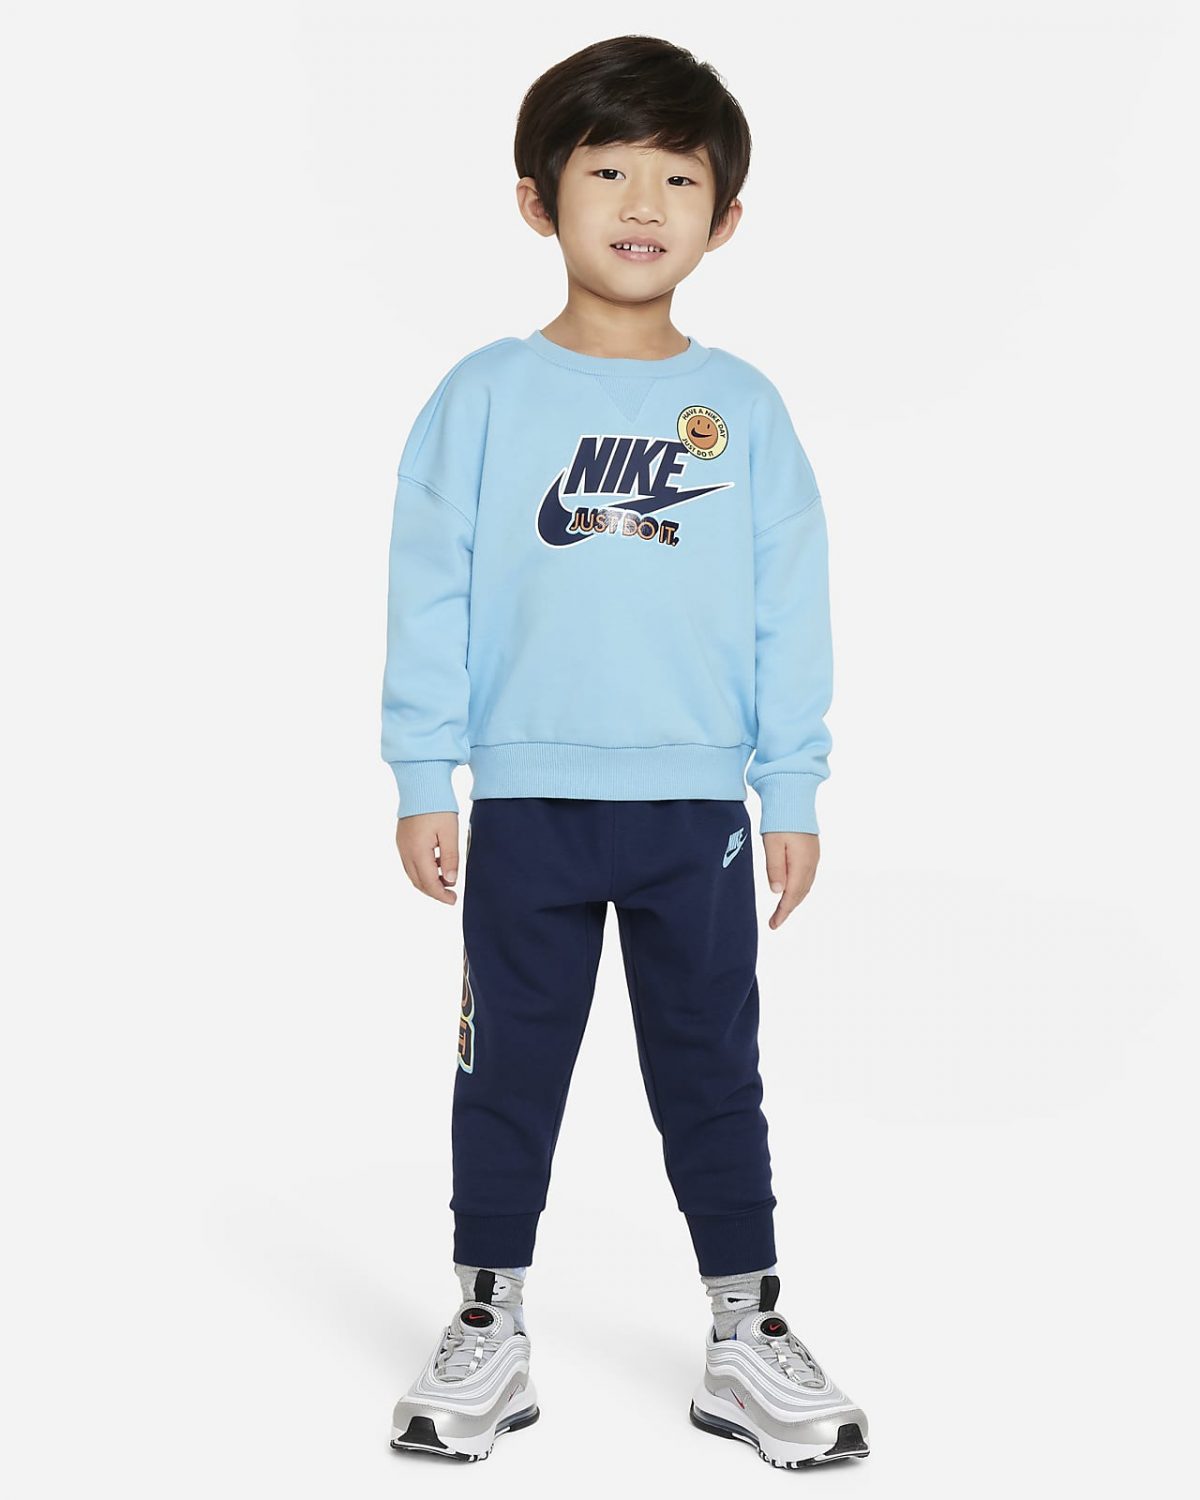 Детский топ Nike Sportswear фото